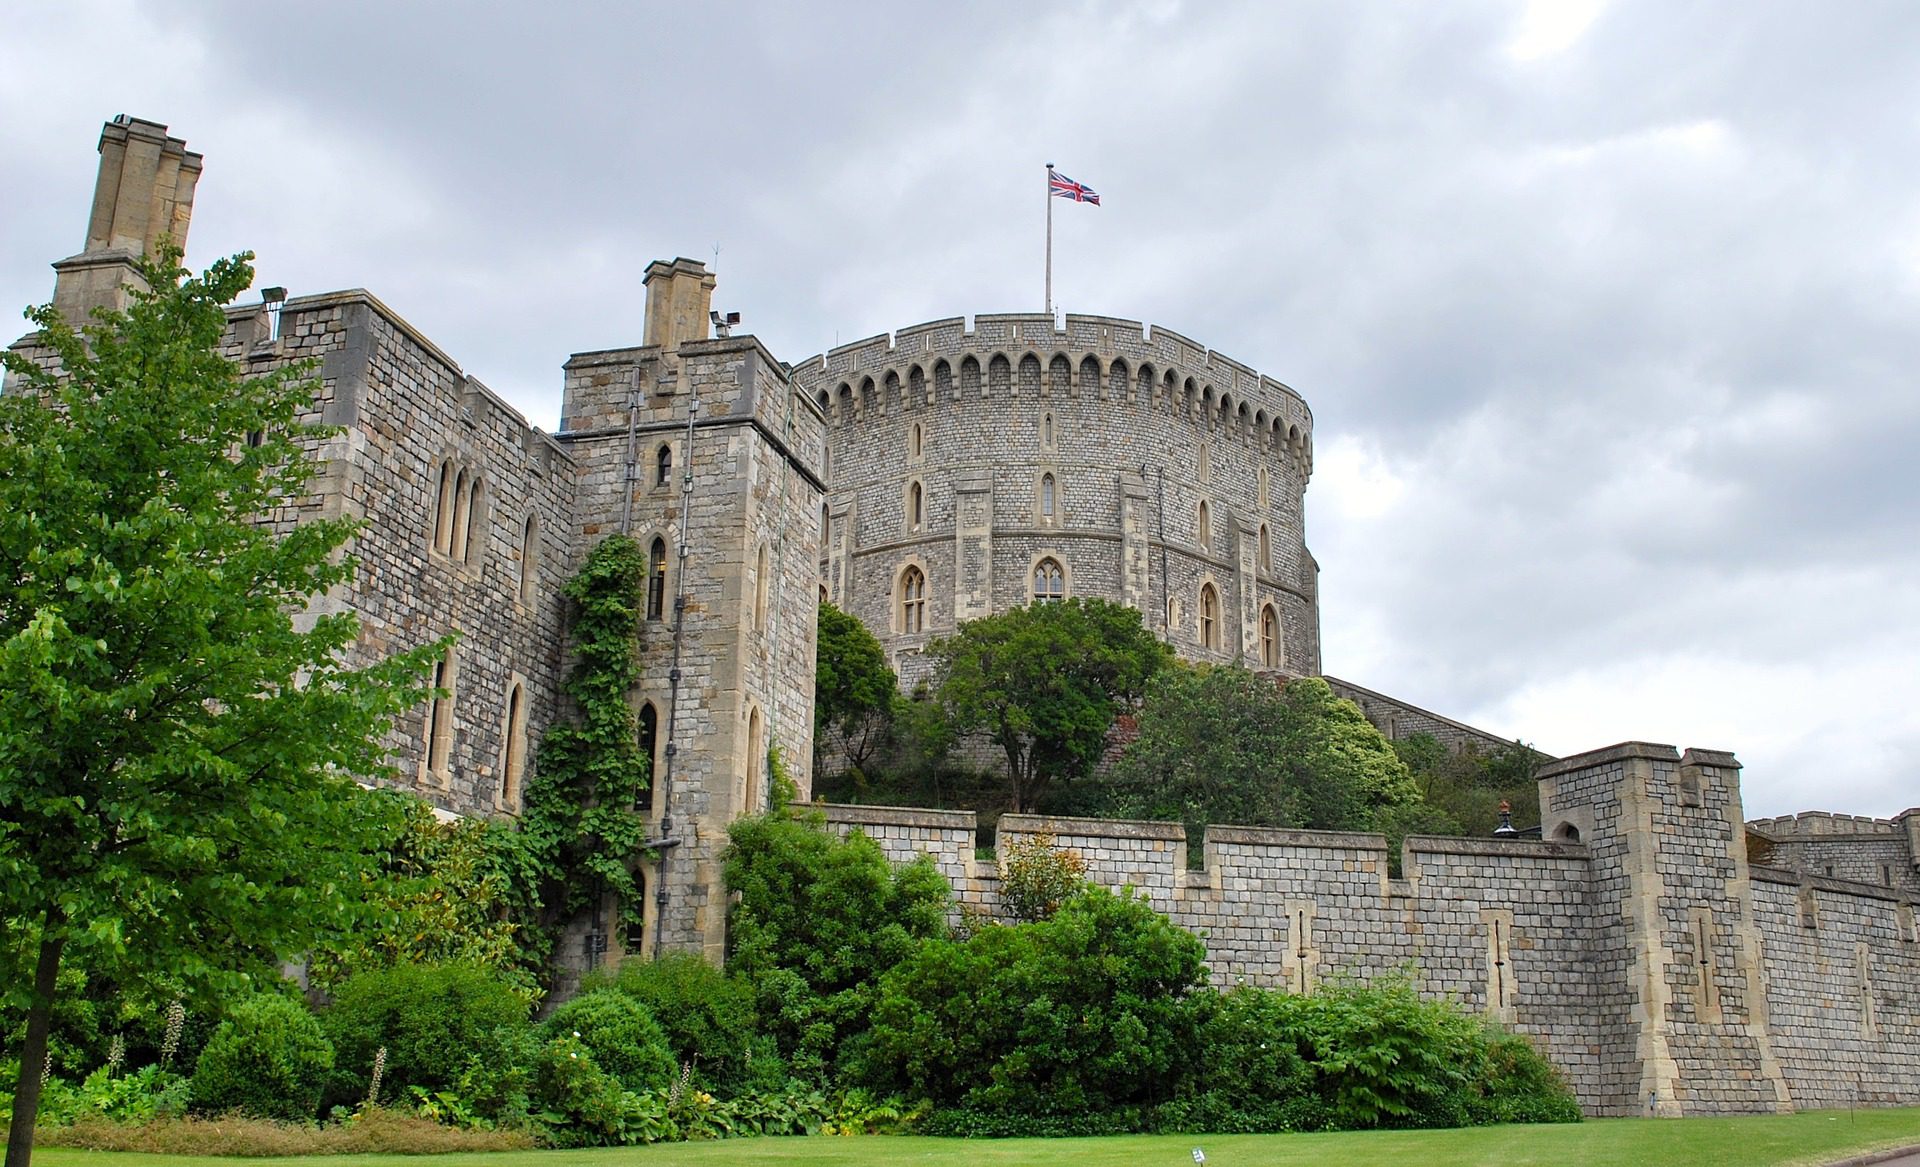 Windsor Castle, Windsor, Berkshire, England